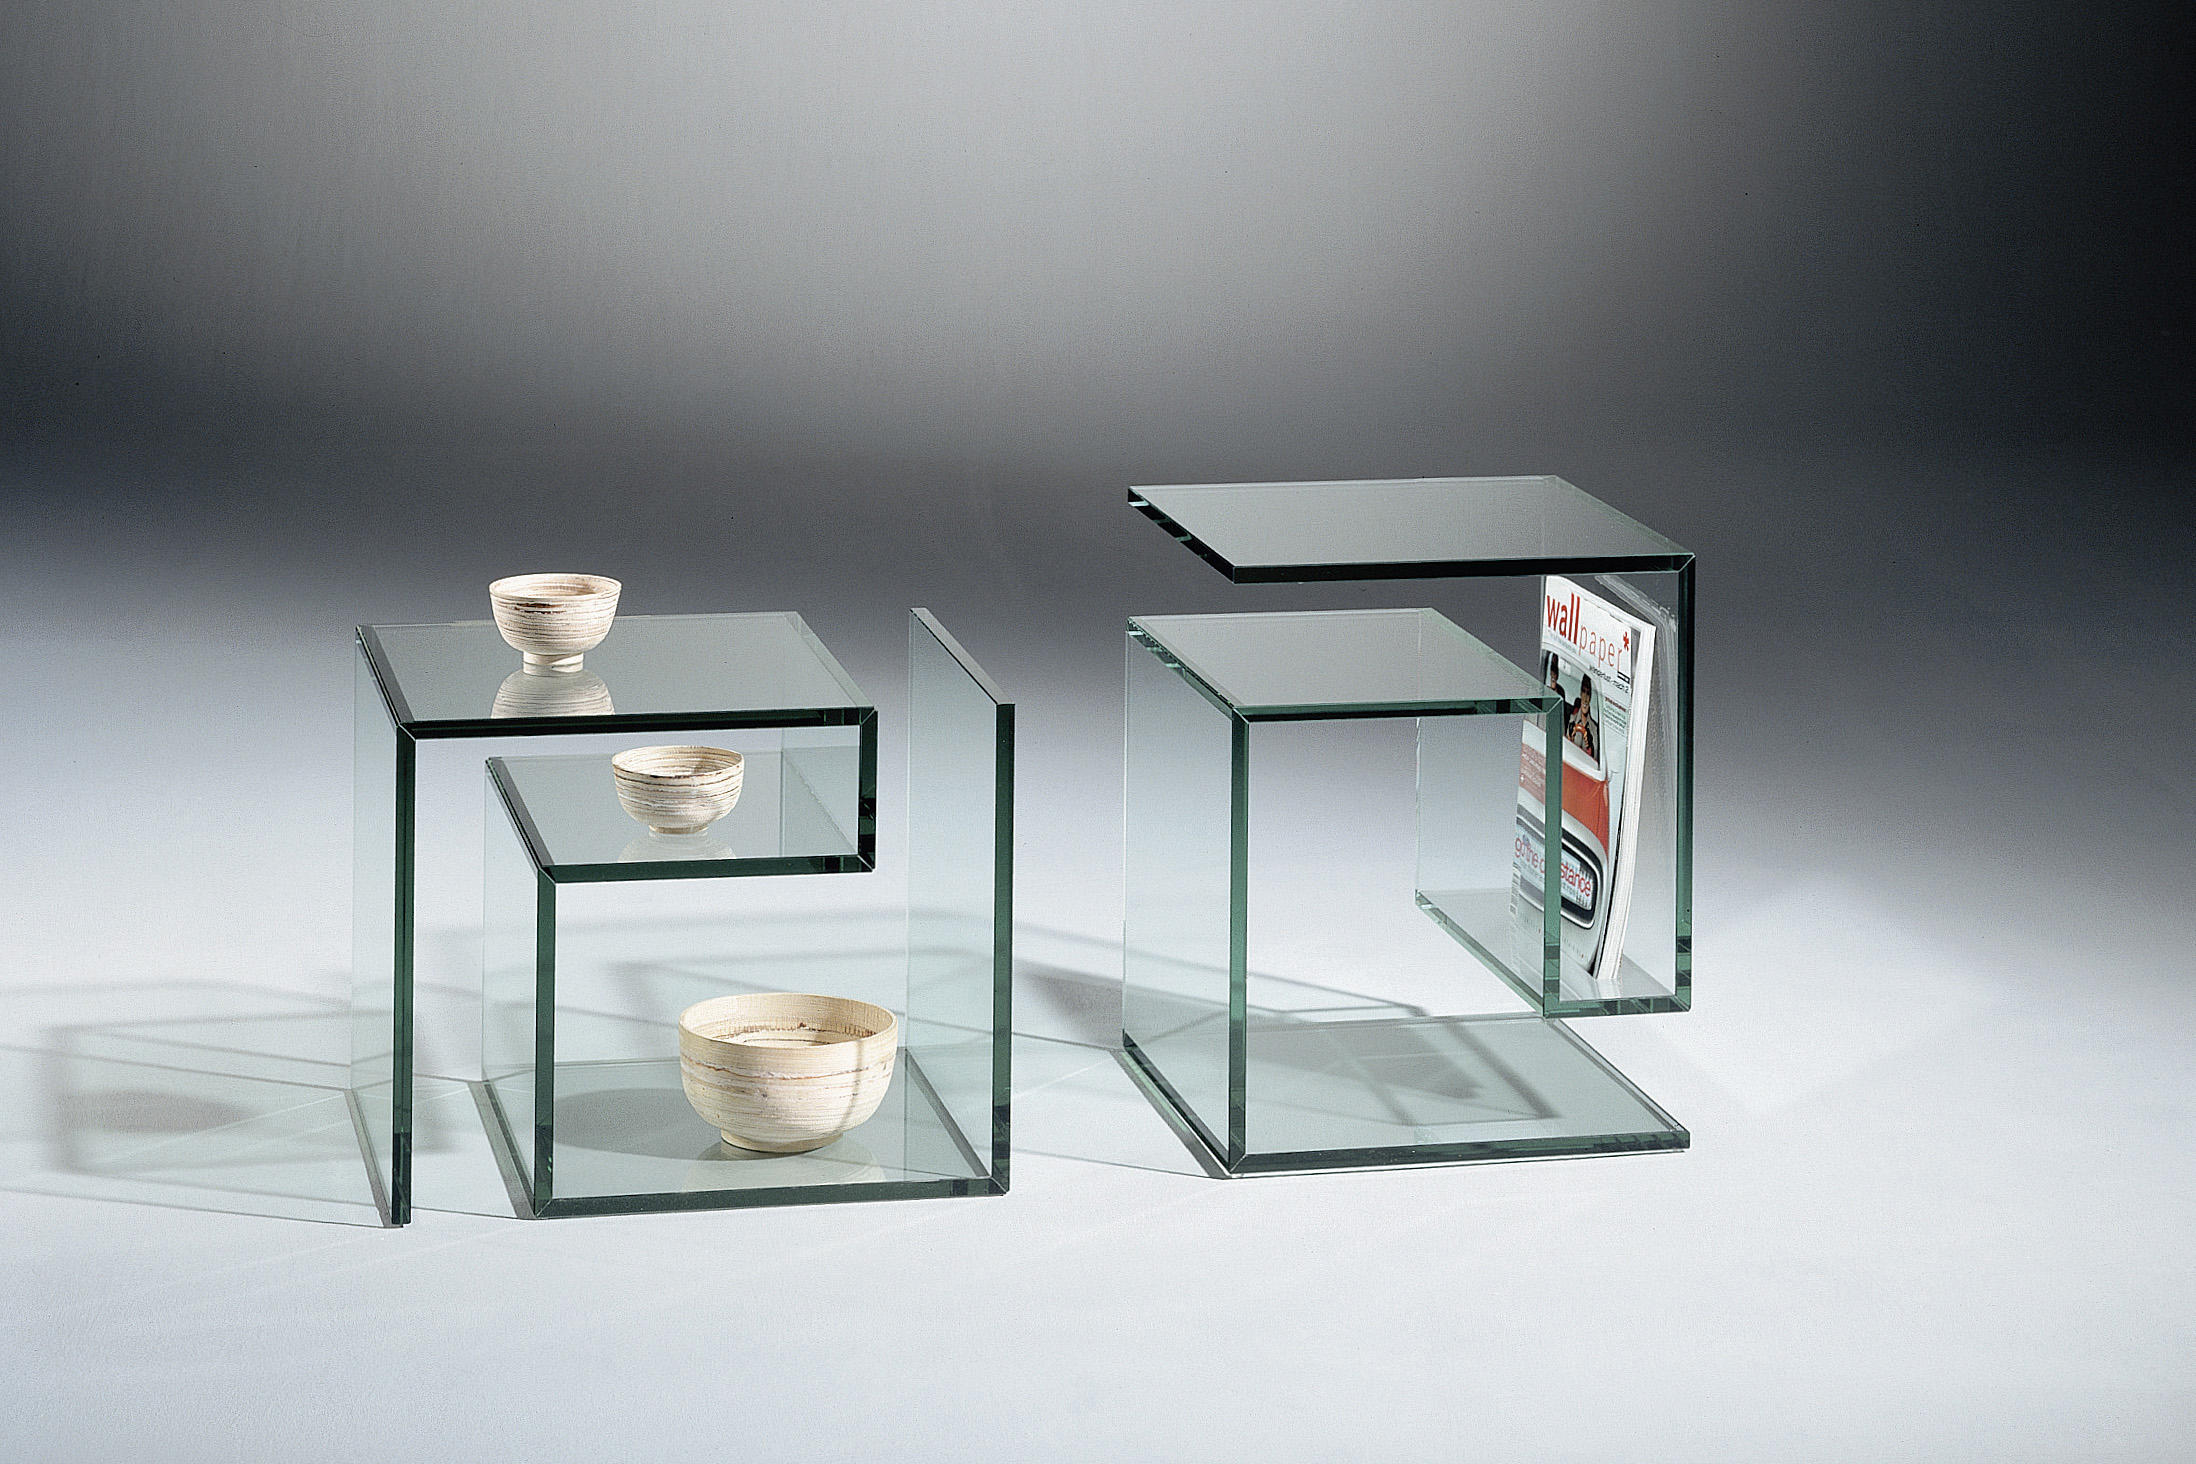 Sofa cooker glass. Изделия из стекла. Мебель из стекла. Необычные изделия из стекла. Дизайнерская мебель из стекла и зеркал.